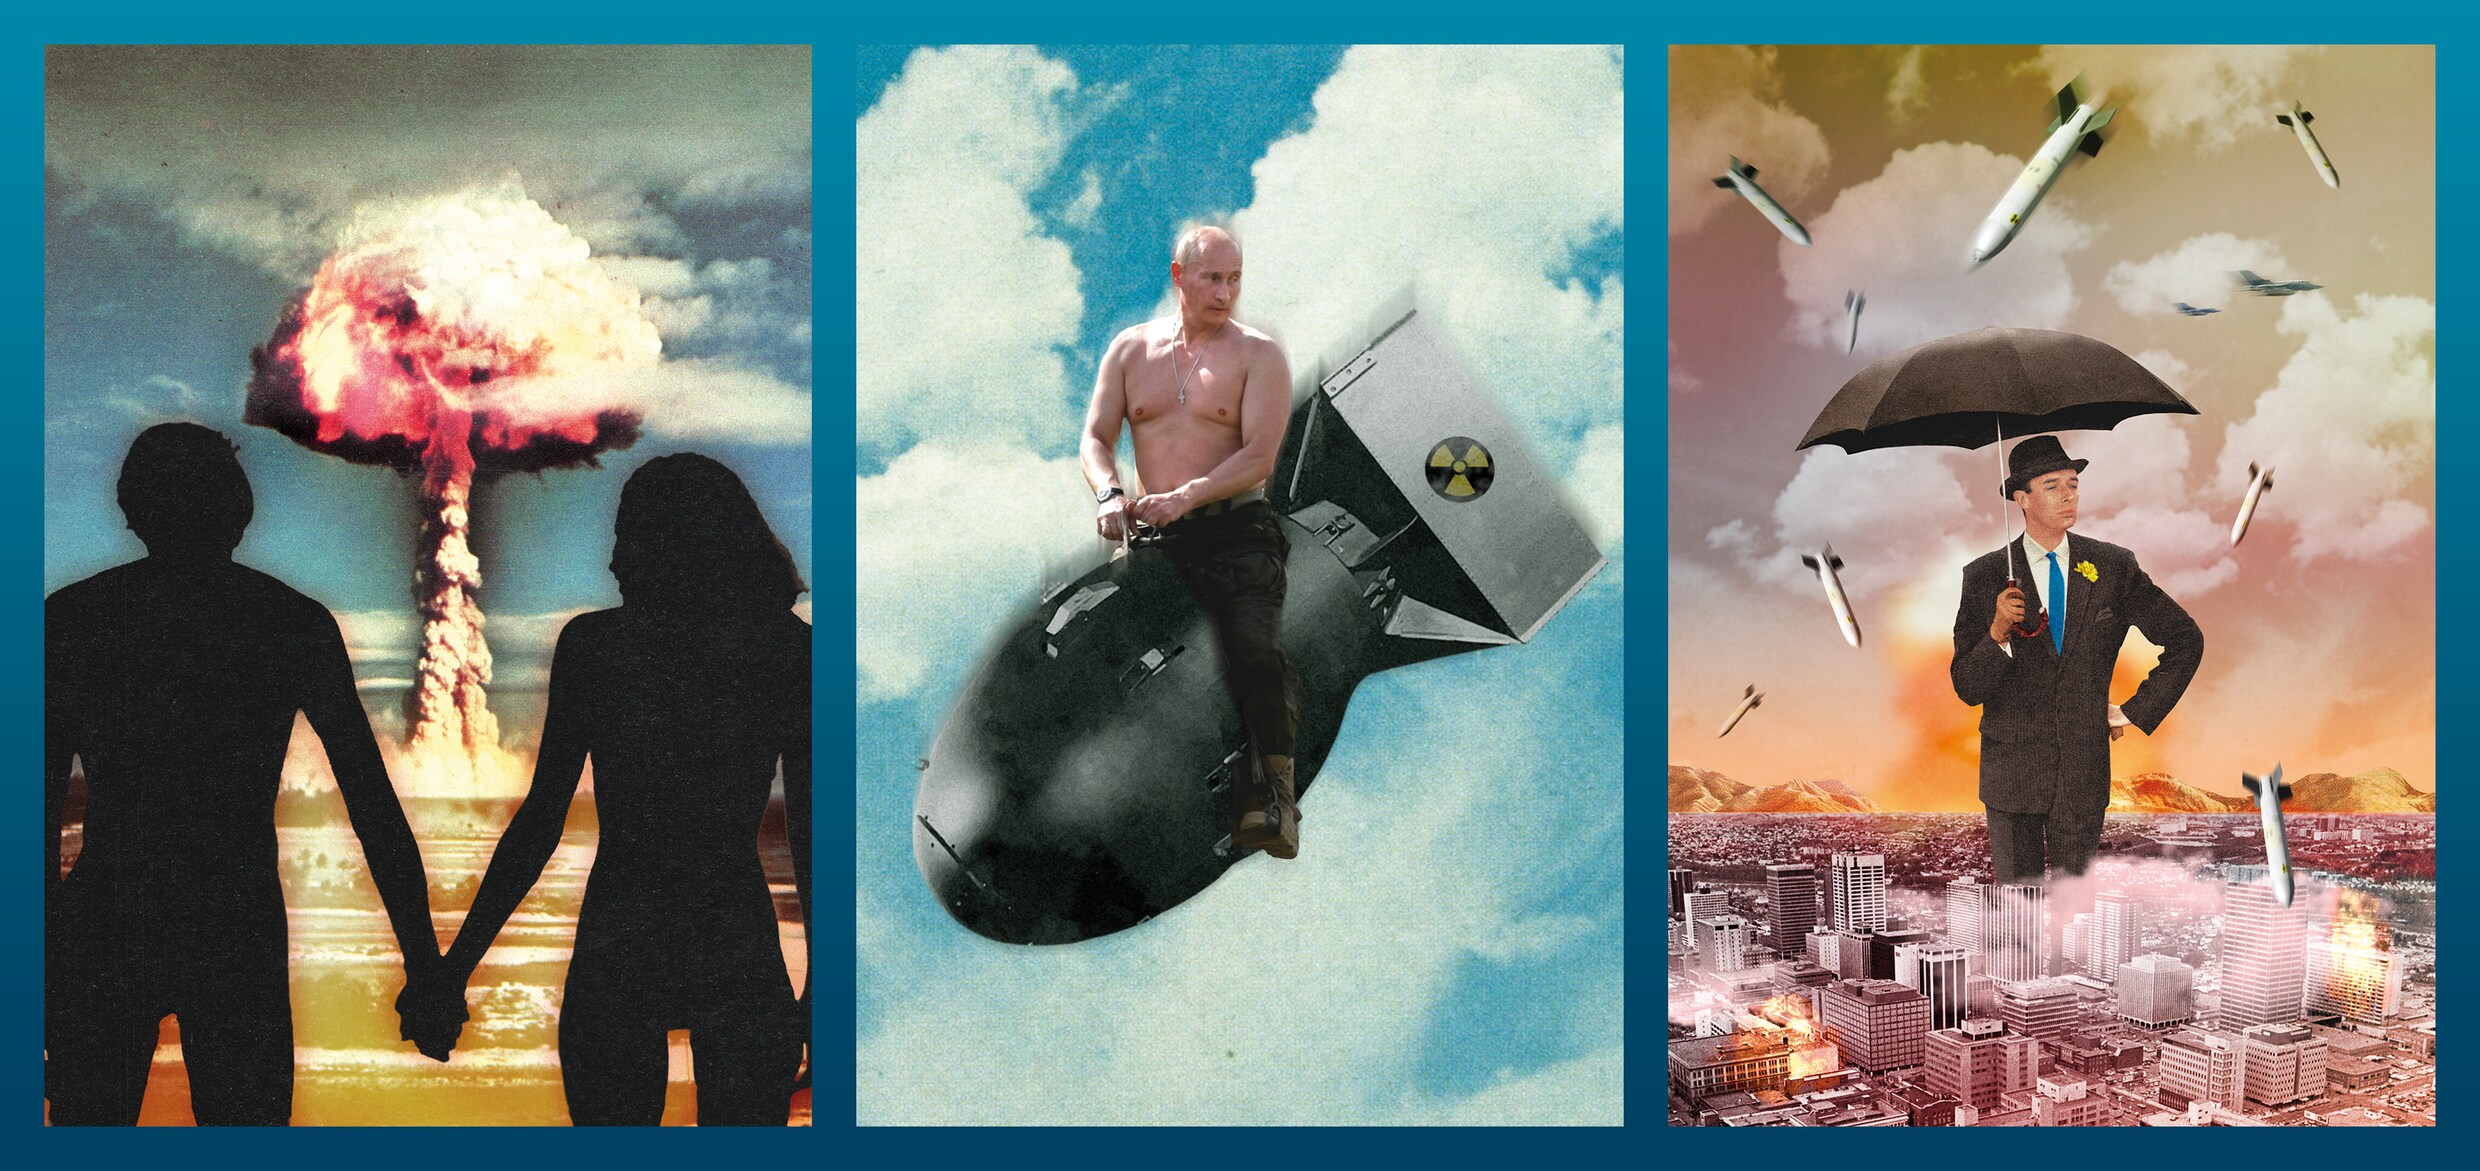 ‘Elk moment kan Poetin beslissen om oligarchen hun vrijheid of zelfs hun leven te ontnemen’: 9 verhalen die u na dit weekend kunt lezen